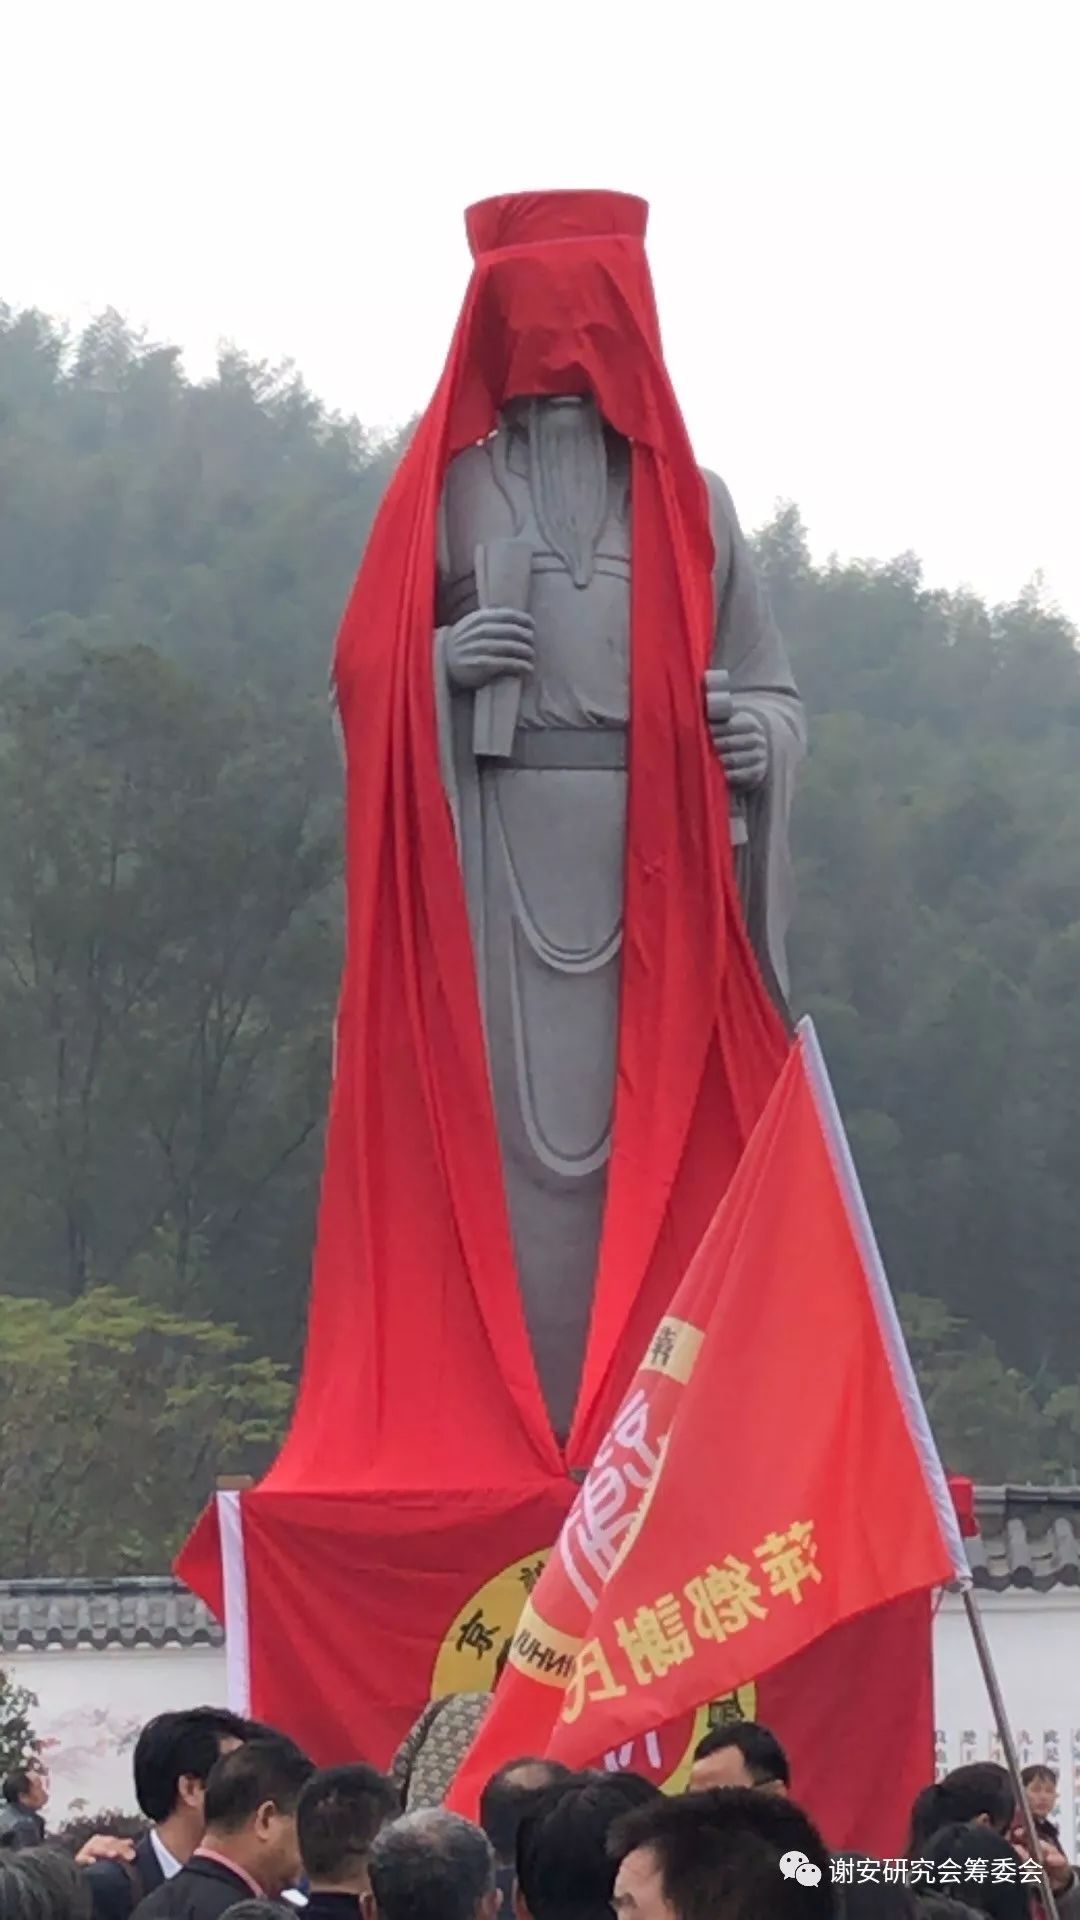 谢叠山诞辰791周年纪念叠山公雕像落成开光庆典在江西弋阳隆重举行